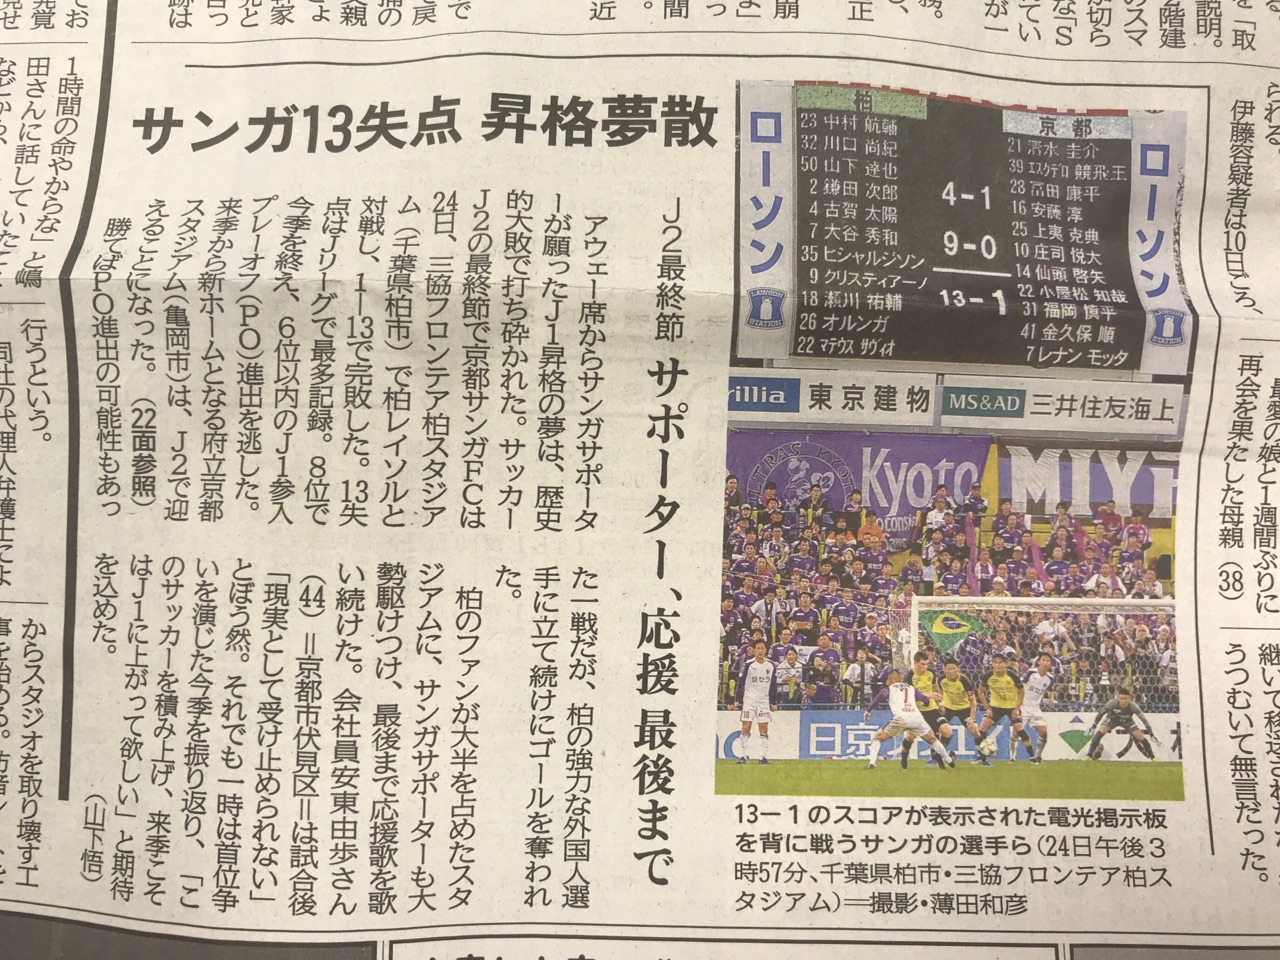 改題 京都サンガ 悪夢の１試合13失点 Jリーグ最多記録 19年11月24日 Sanga Masaruのブログ